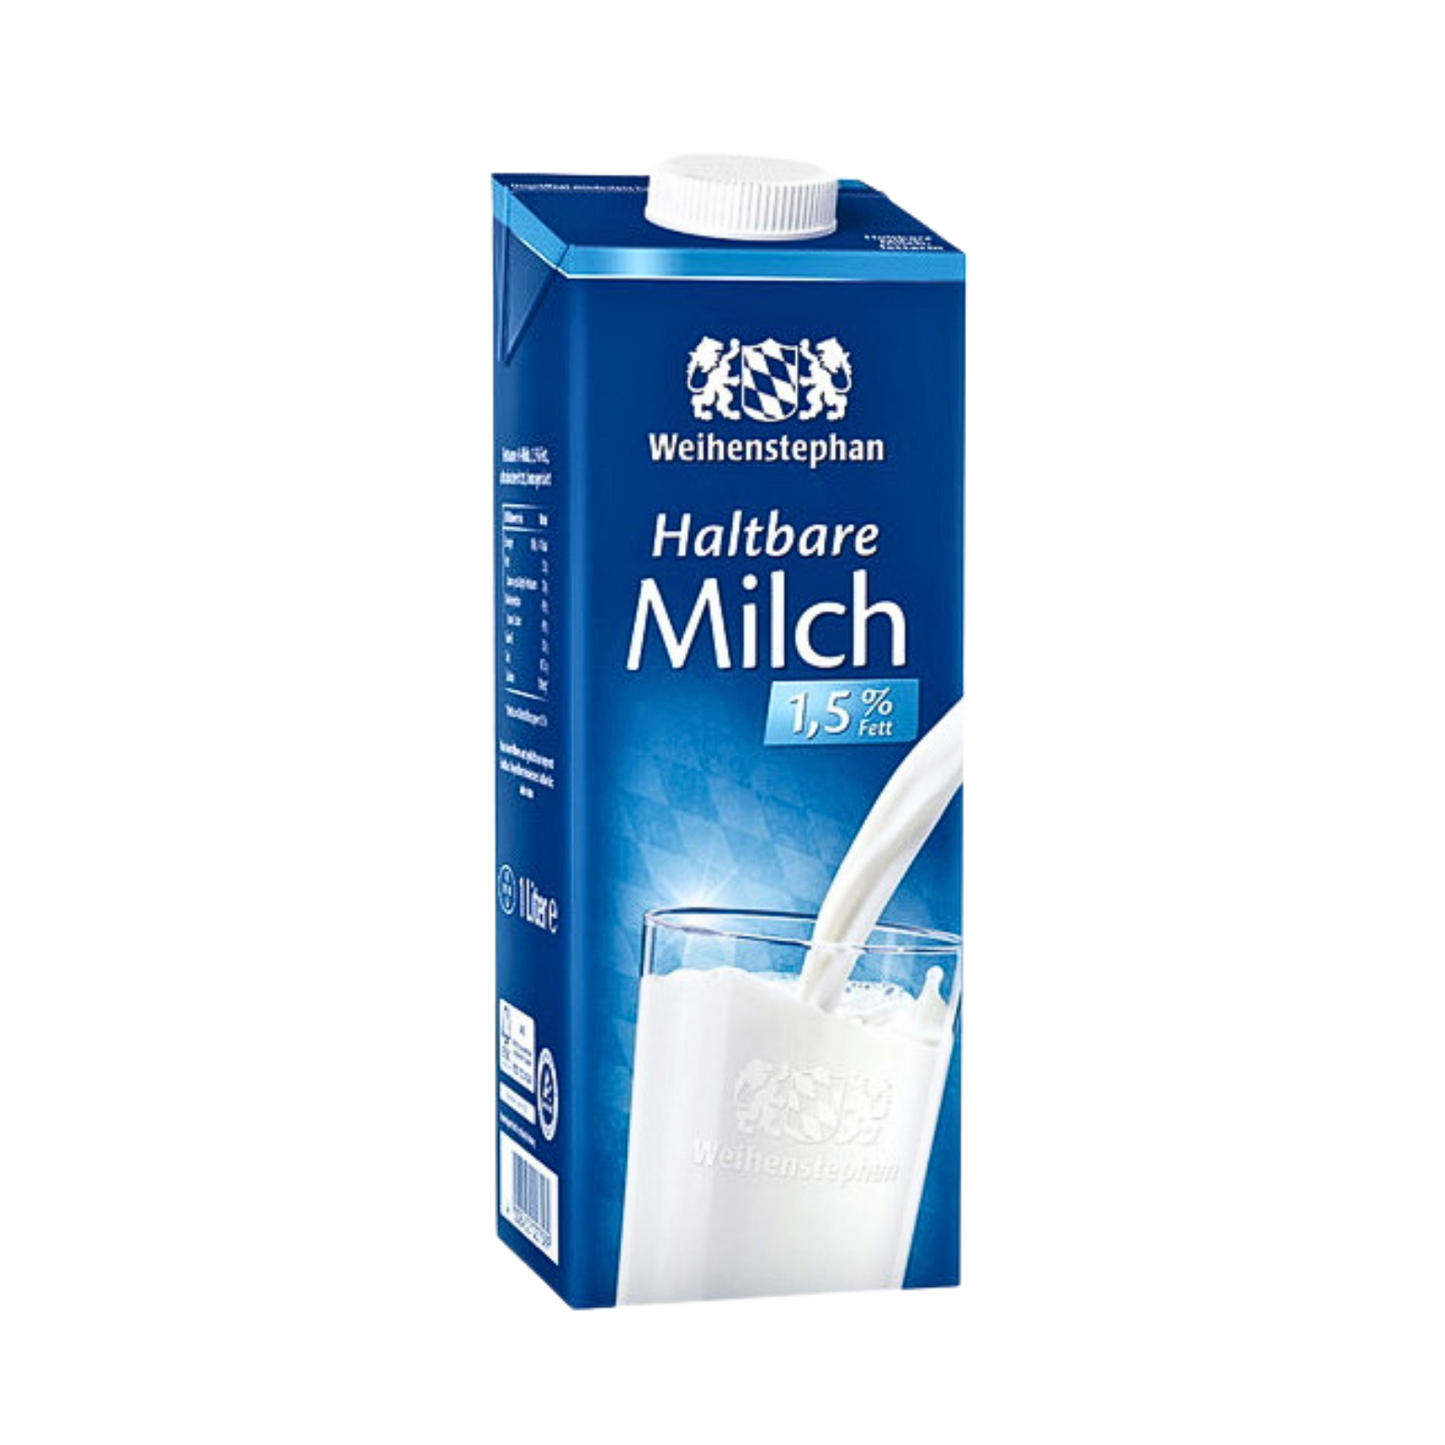 Weihenstephan long-life milk 1.5% fat, 1 liter